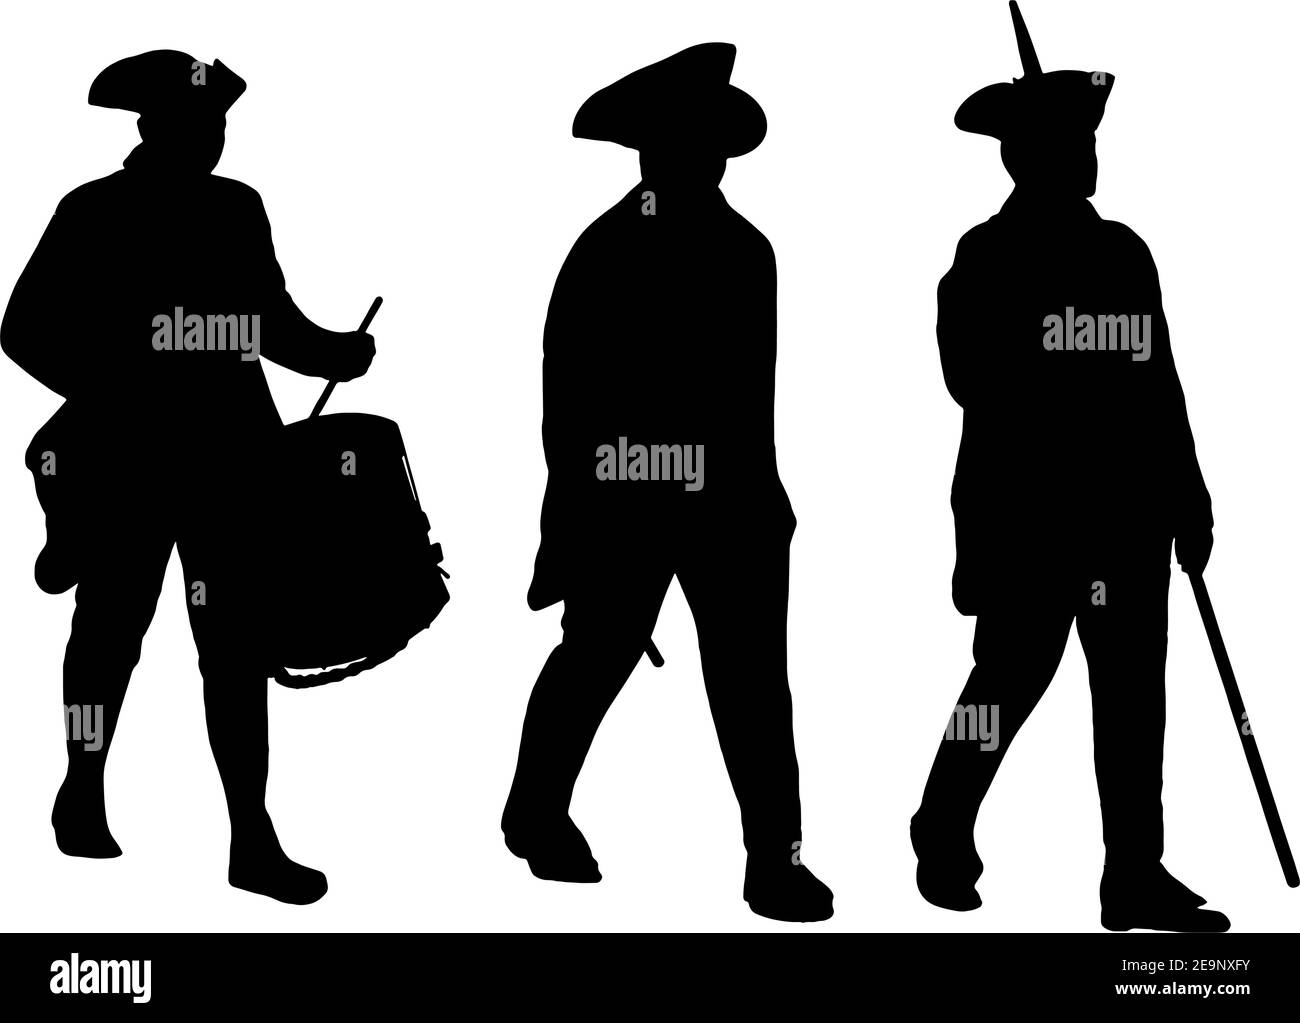 Des soldats américains de la guerre d'indépendance marchent des silhouettes Illustration de Vecteur